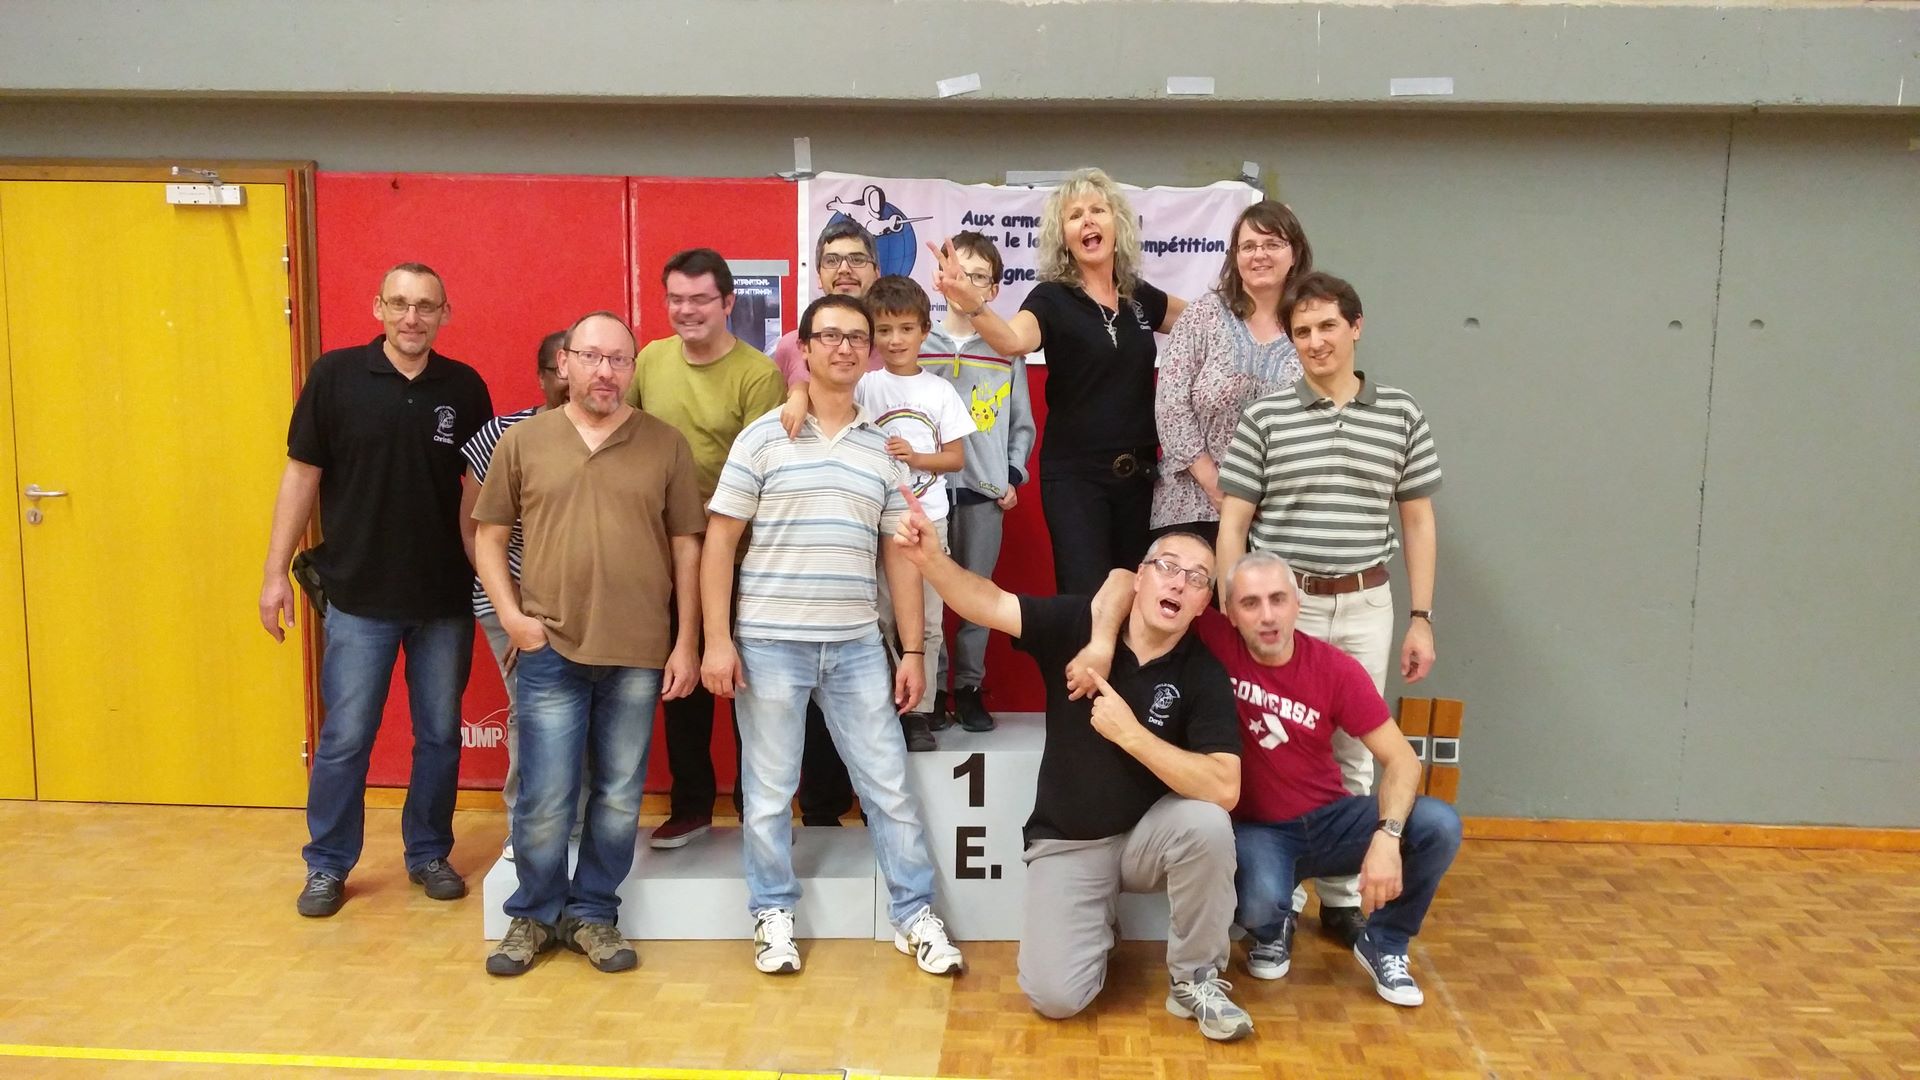 Bénévoles du tournoi d'escrime de Wittenheim 2017